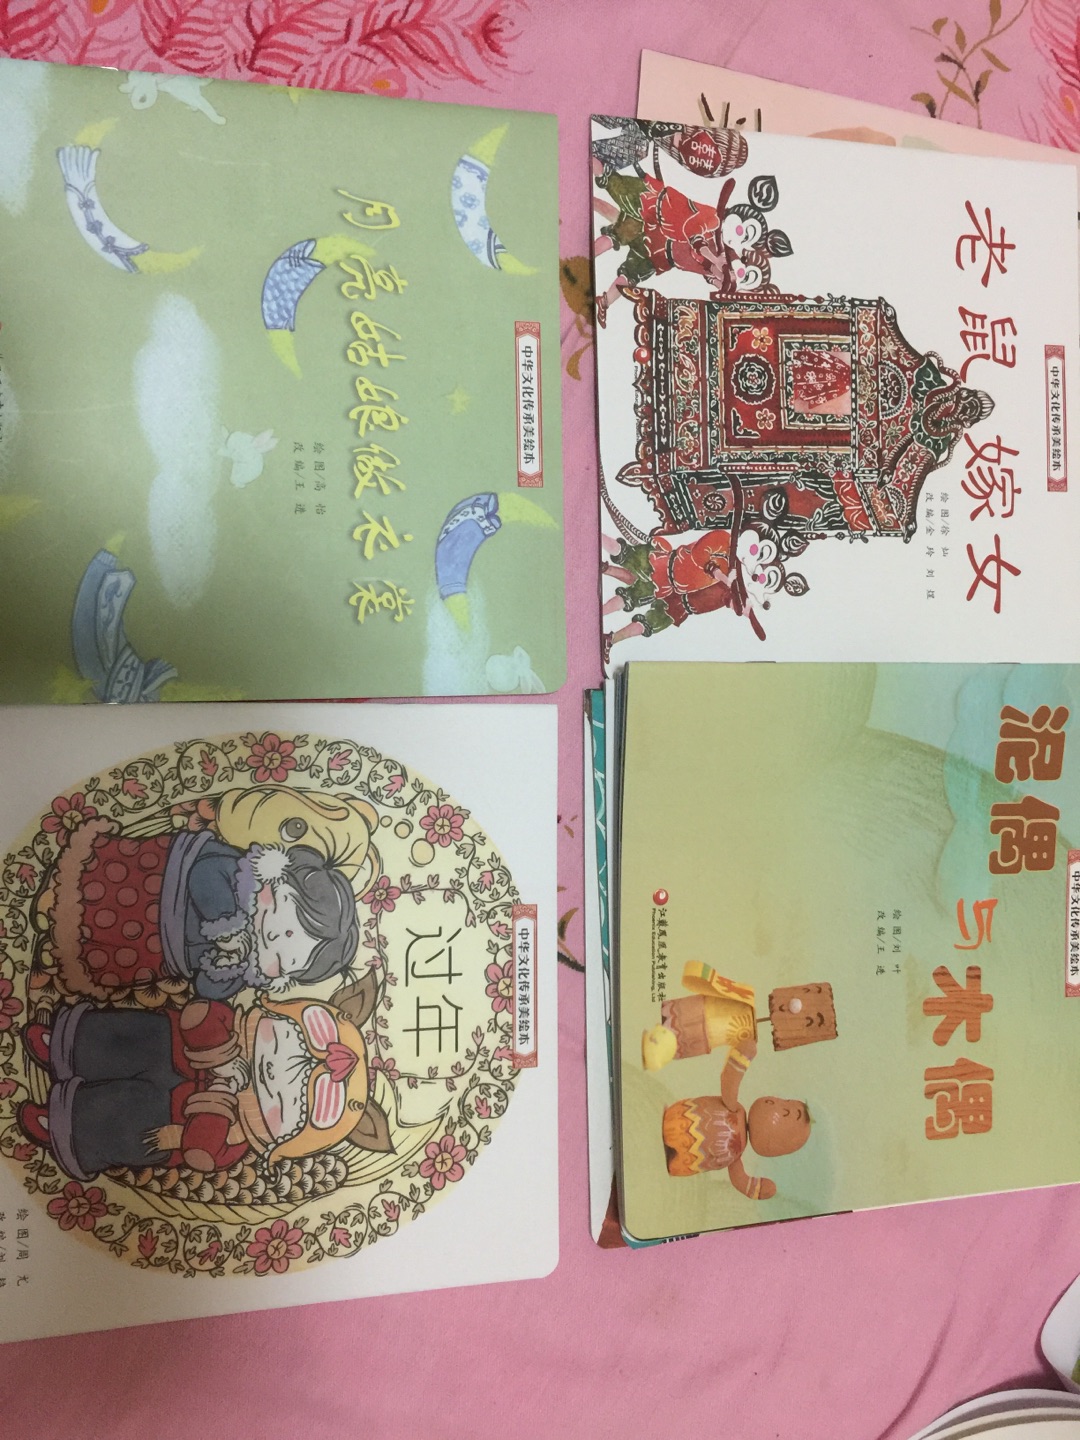 画面很古色古香，有中国特色，不失为让宝宝了解国画的好书，文字不算很多，比较容易理解，内容也很有中国特色，了解文化不错